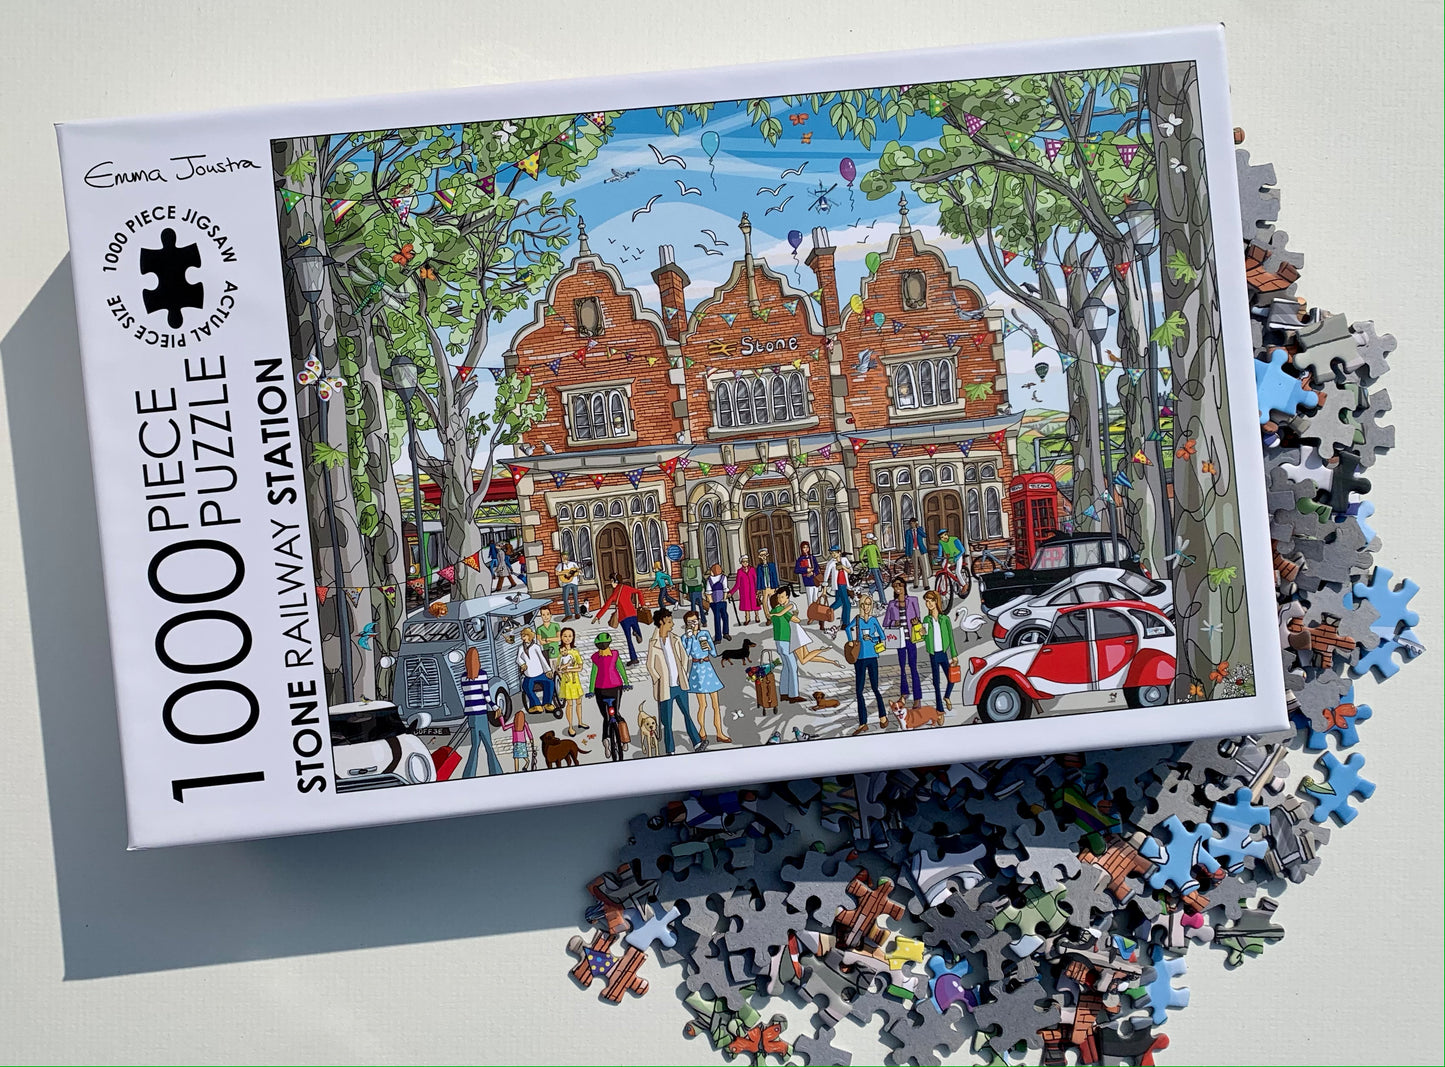 Stone Railway Station 1,000 piece jigsaw puzzle